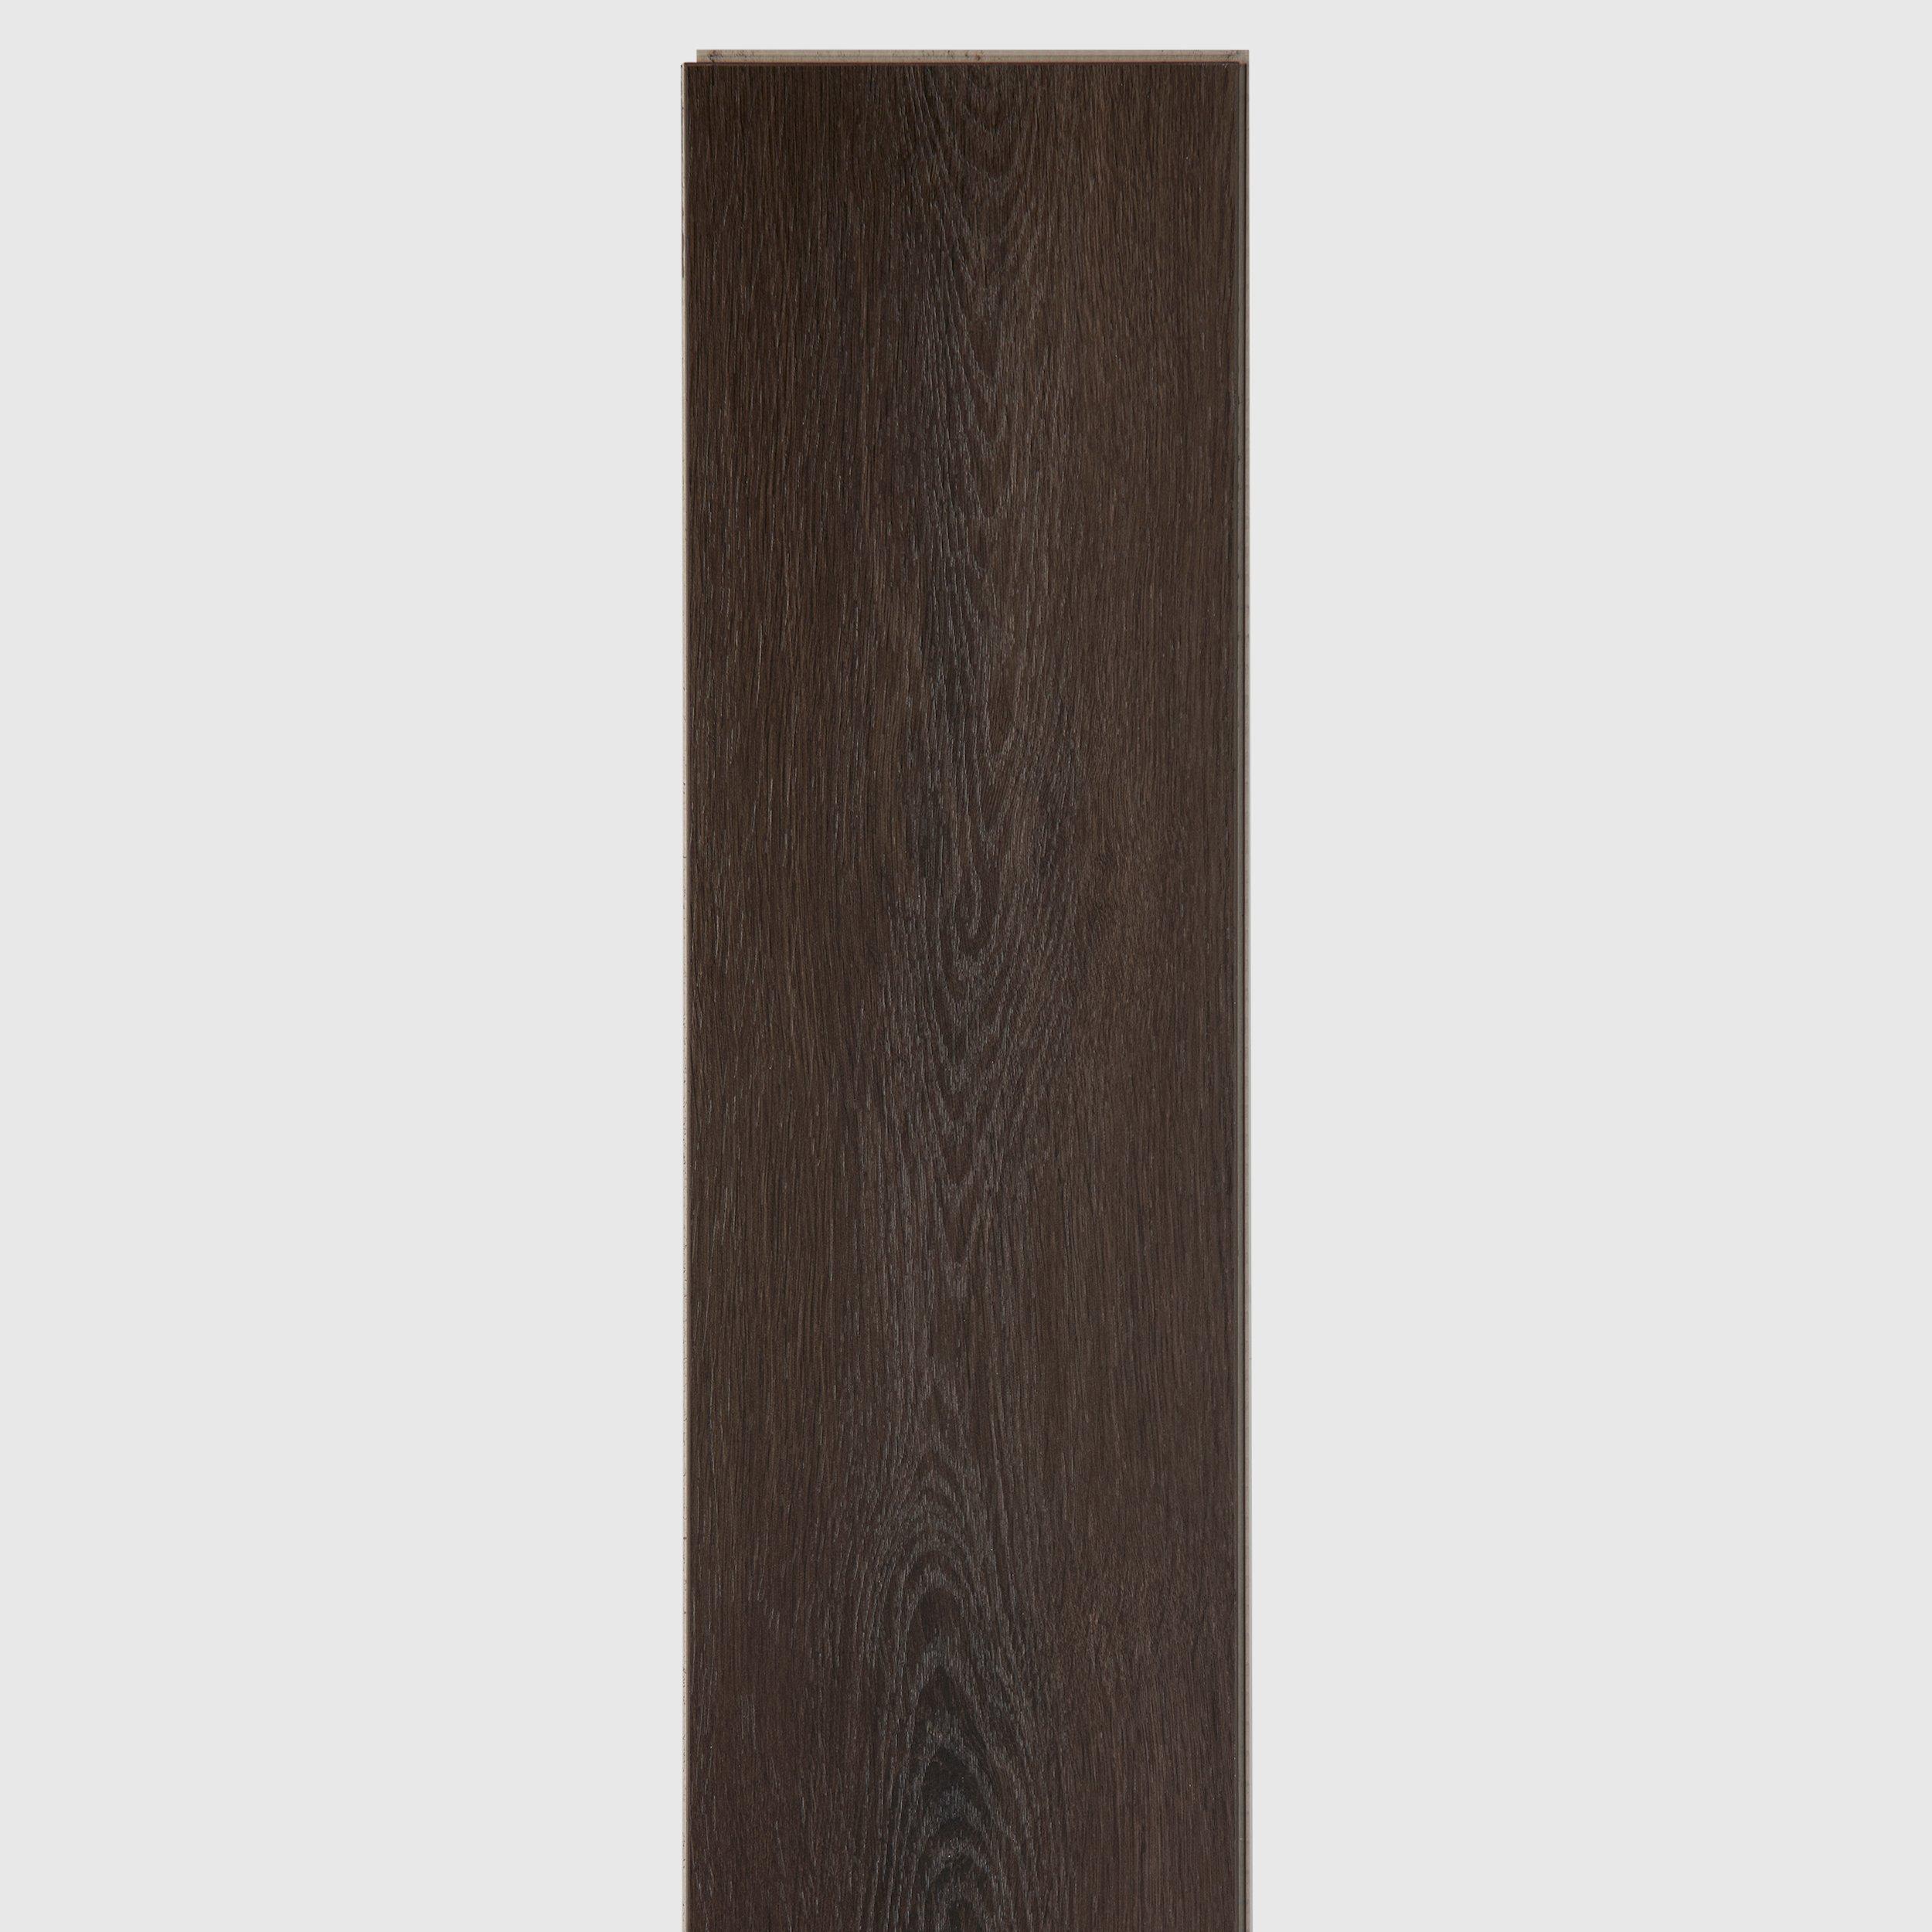 Maison Bordeaux Rigid Core Luxury Vinyl Plank - Cork Back